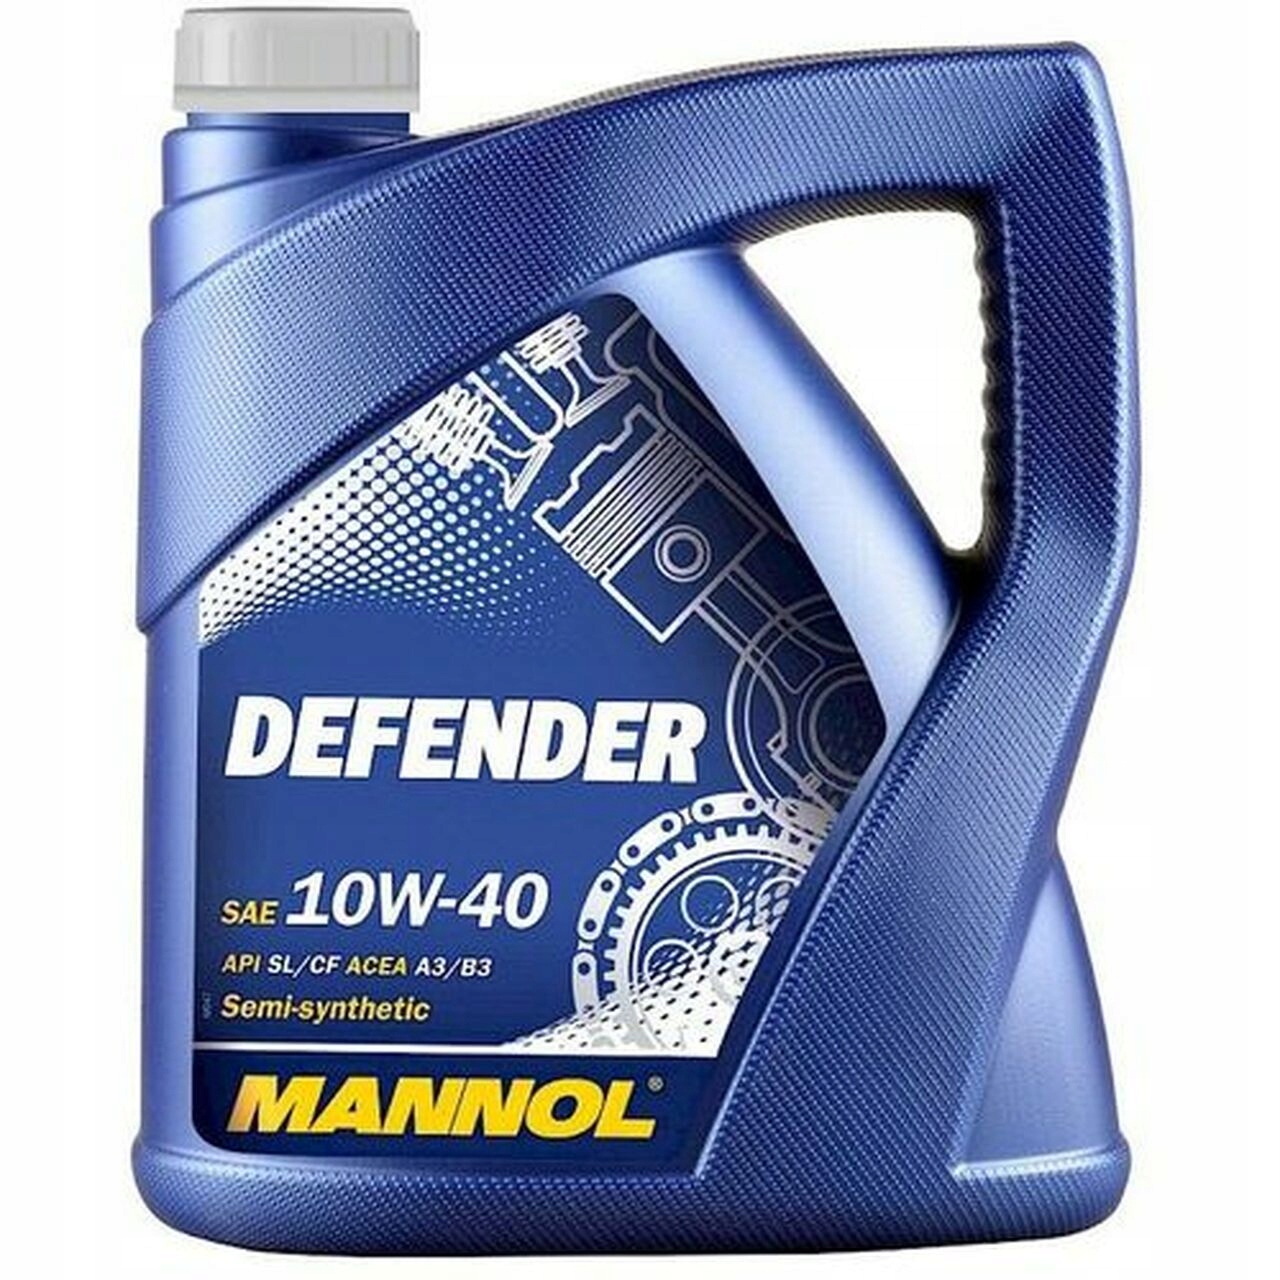 Defender oil. Mannol 10/40. Mannol 5 40. Mannol Classic 10w-40. Mannol 10w50.